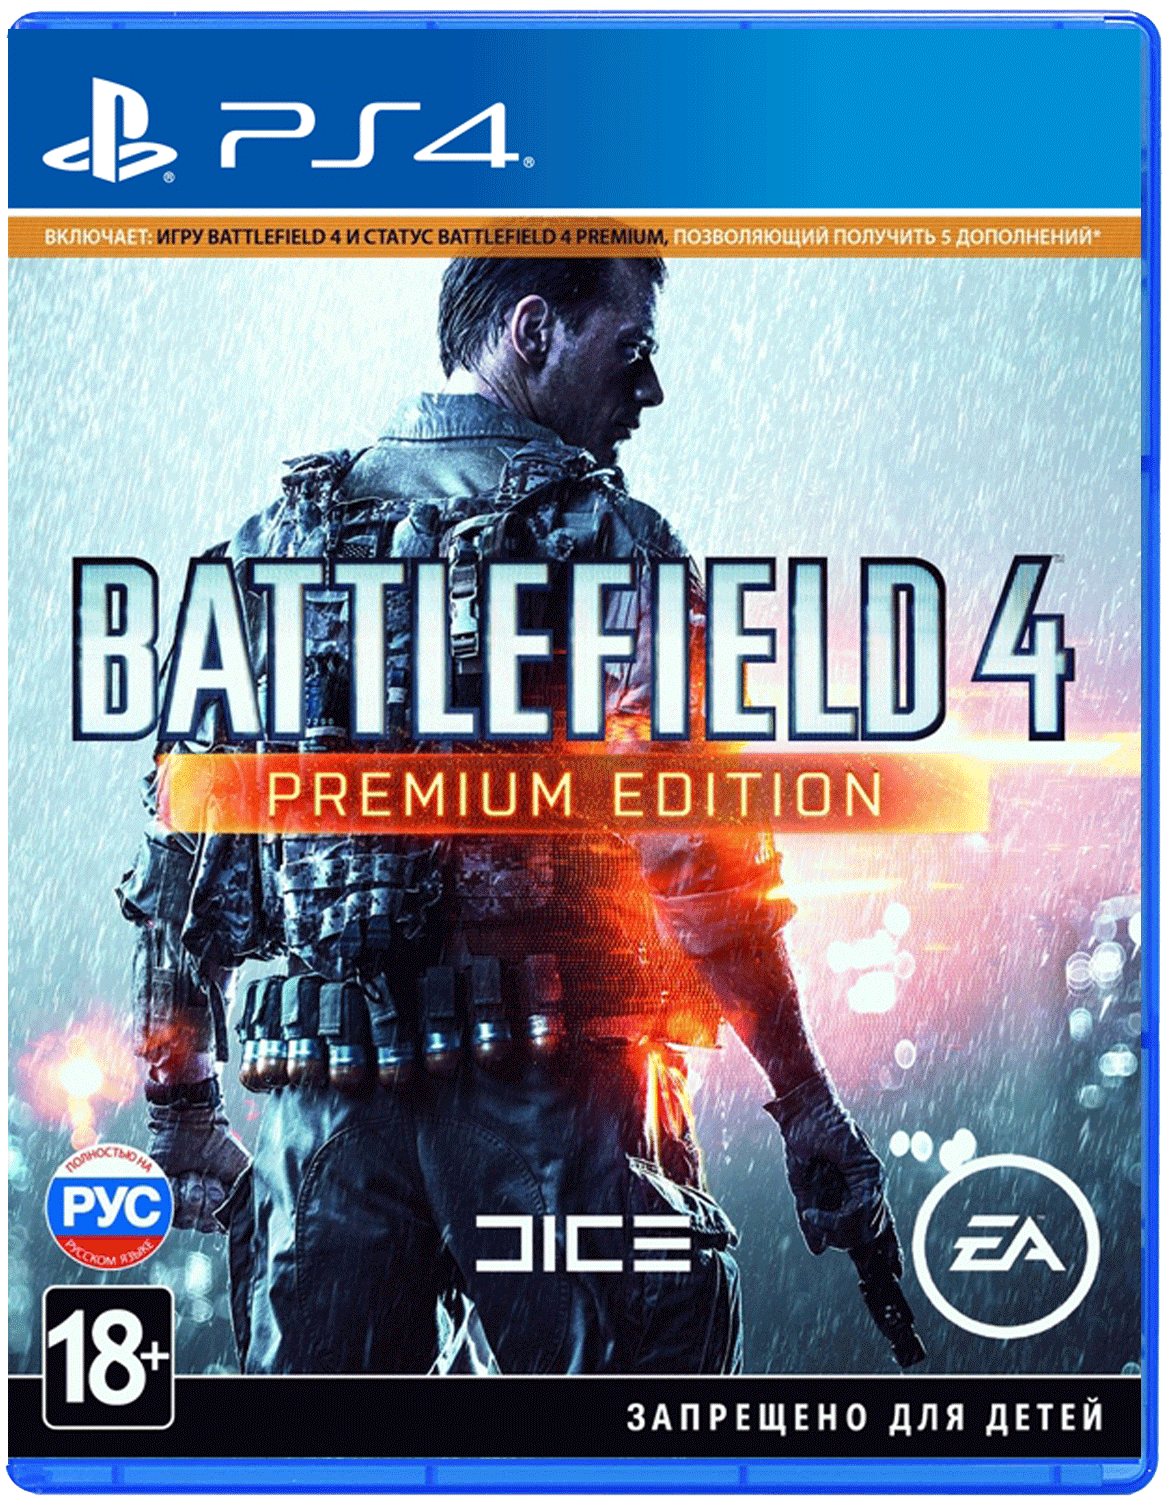 Игры на пс4 прошитые. Battlefield 4 Premium Edition ps4. Battlefield 4 ps4 диск. Диск для ps4 Battlefield 4 Premium Edition. Battlefield ps4 игры на ps4.